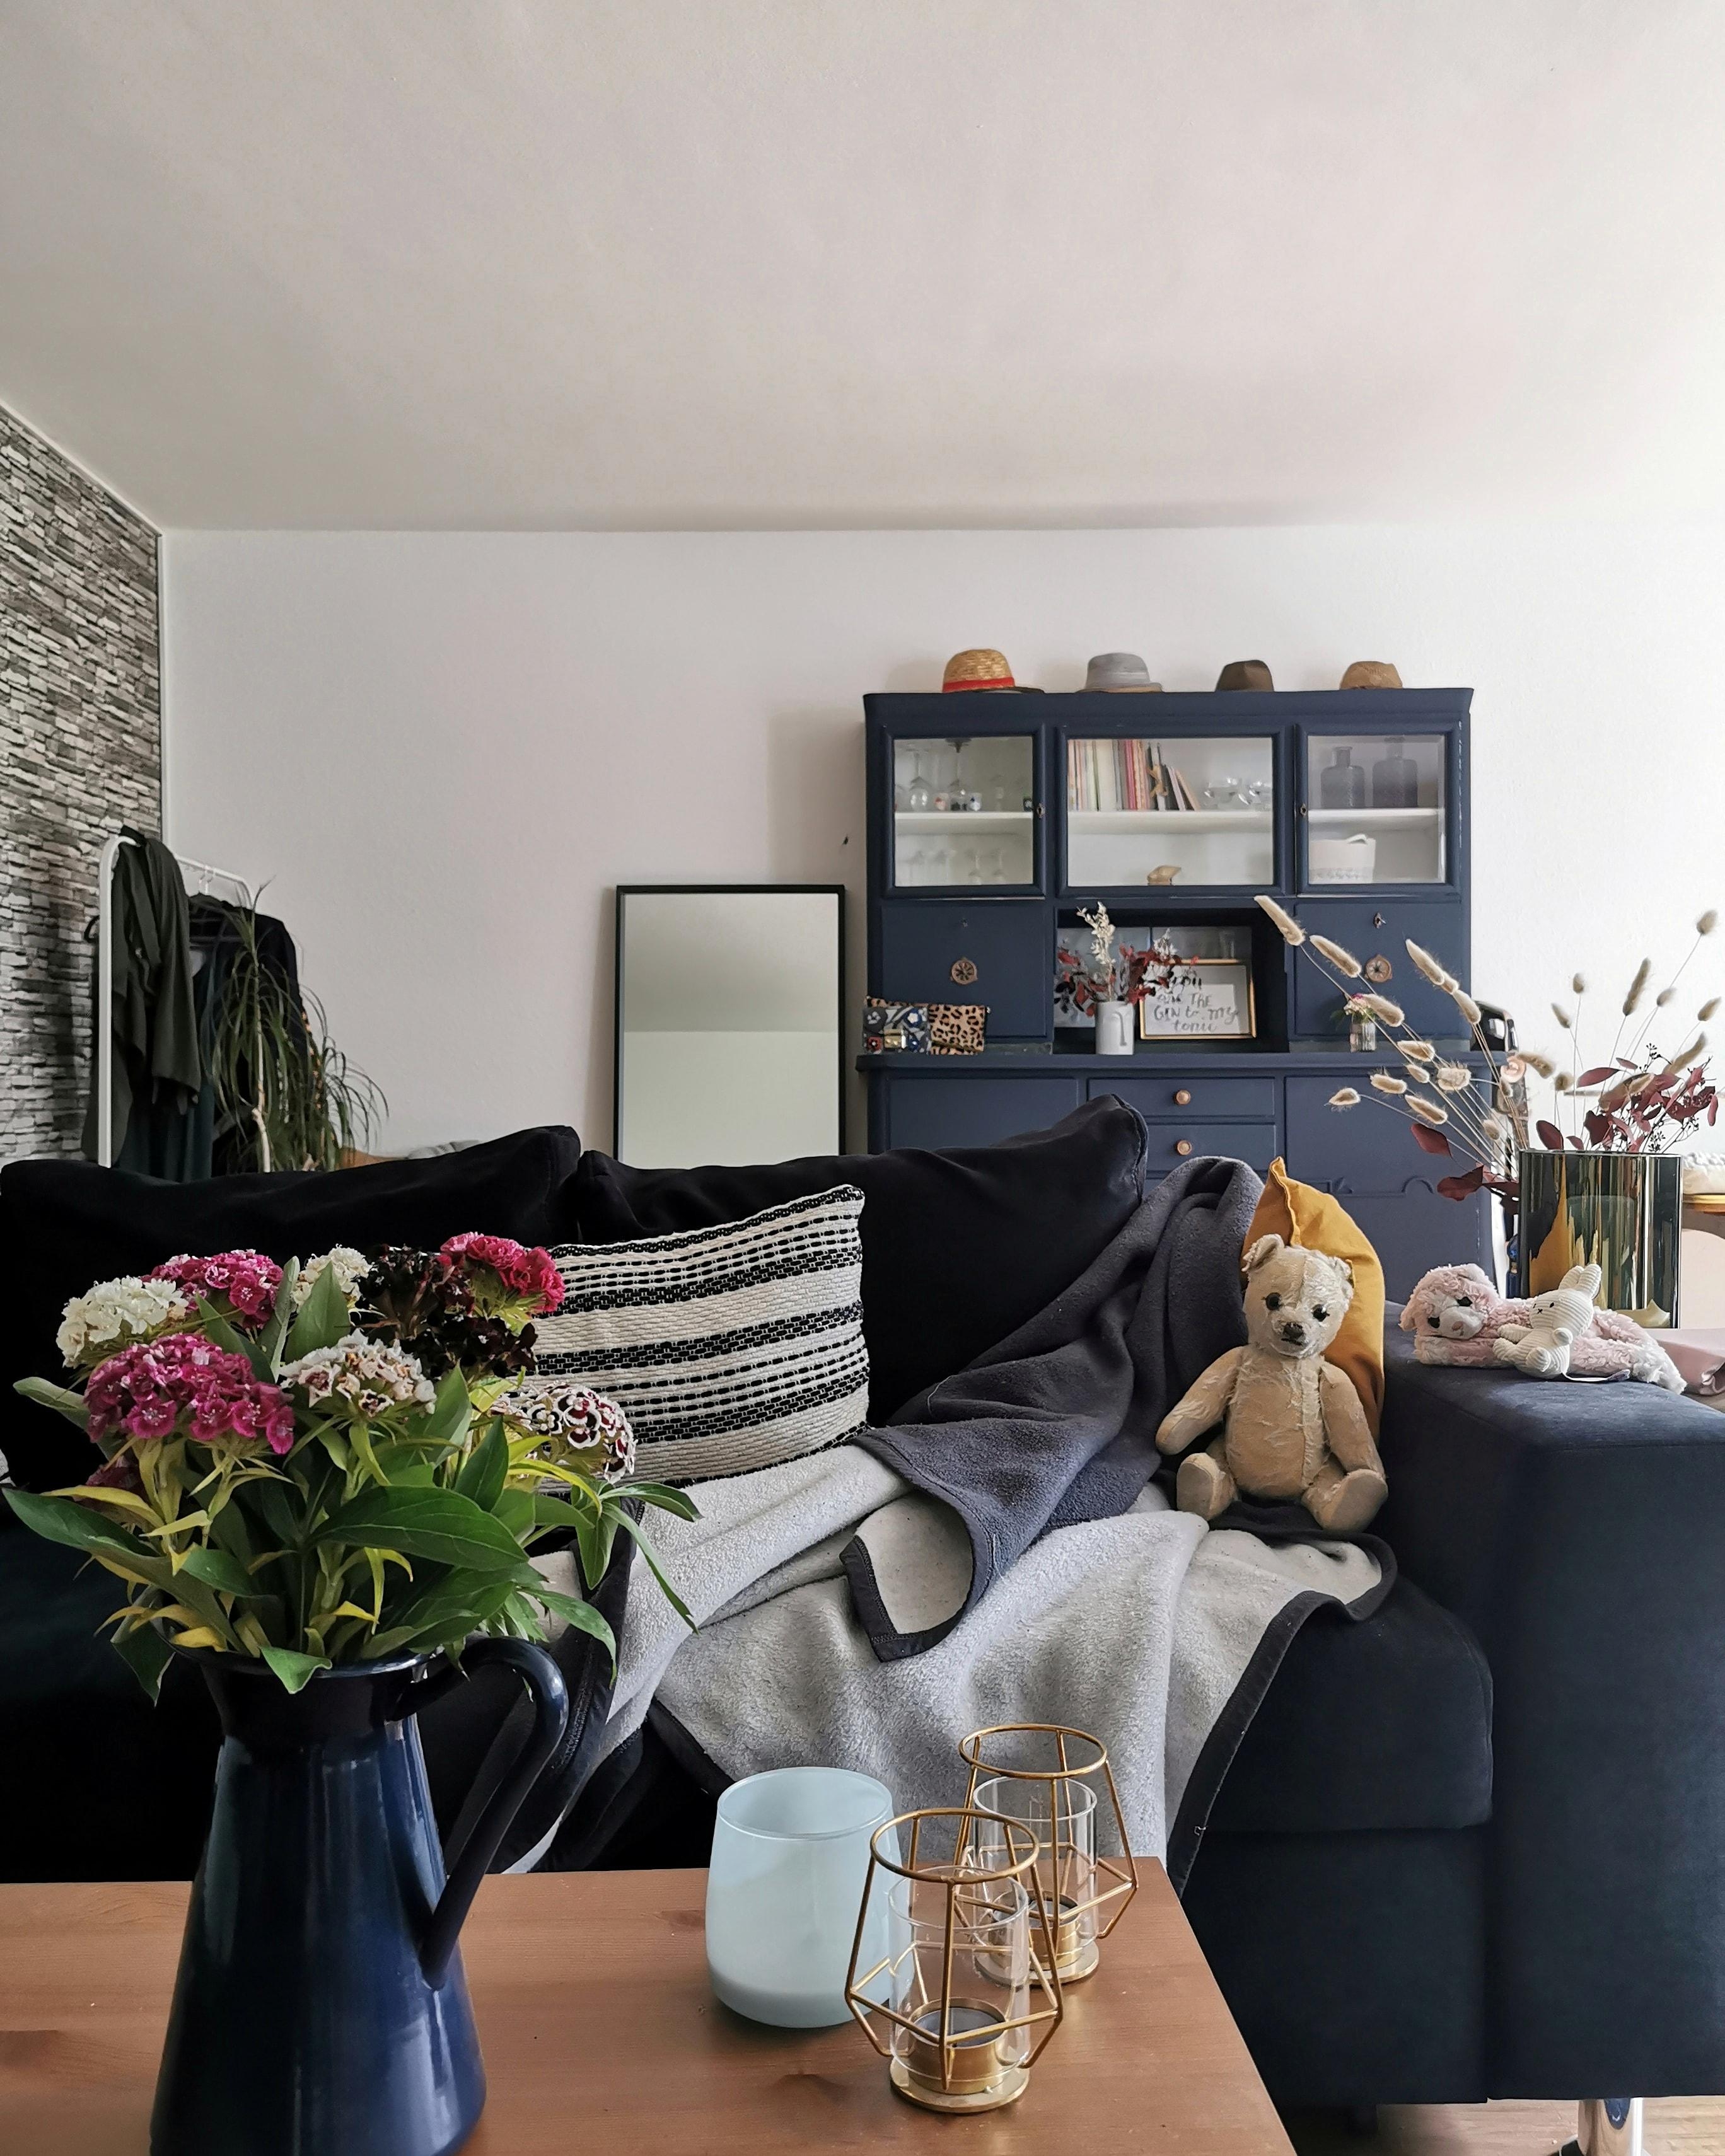 Nach einem sehr produktiven Wochenende geht es jetzt auf die Couch ❤️ #wohnzimmer #couch #cozyplace #blau #küchenbuffet 